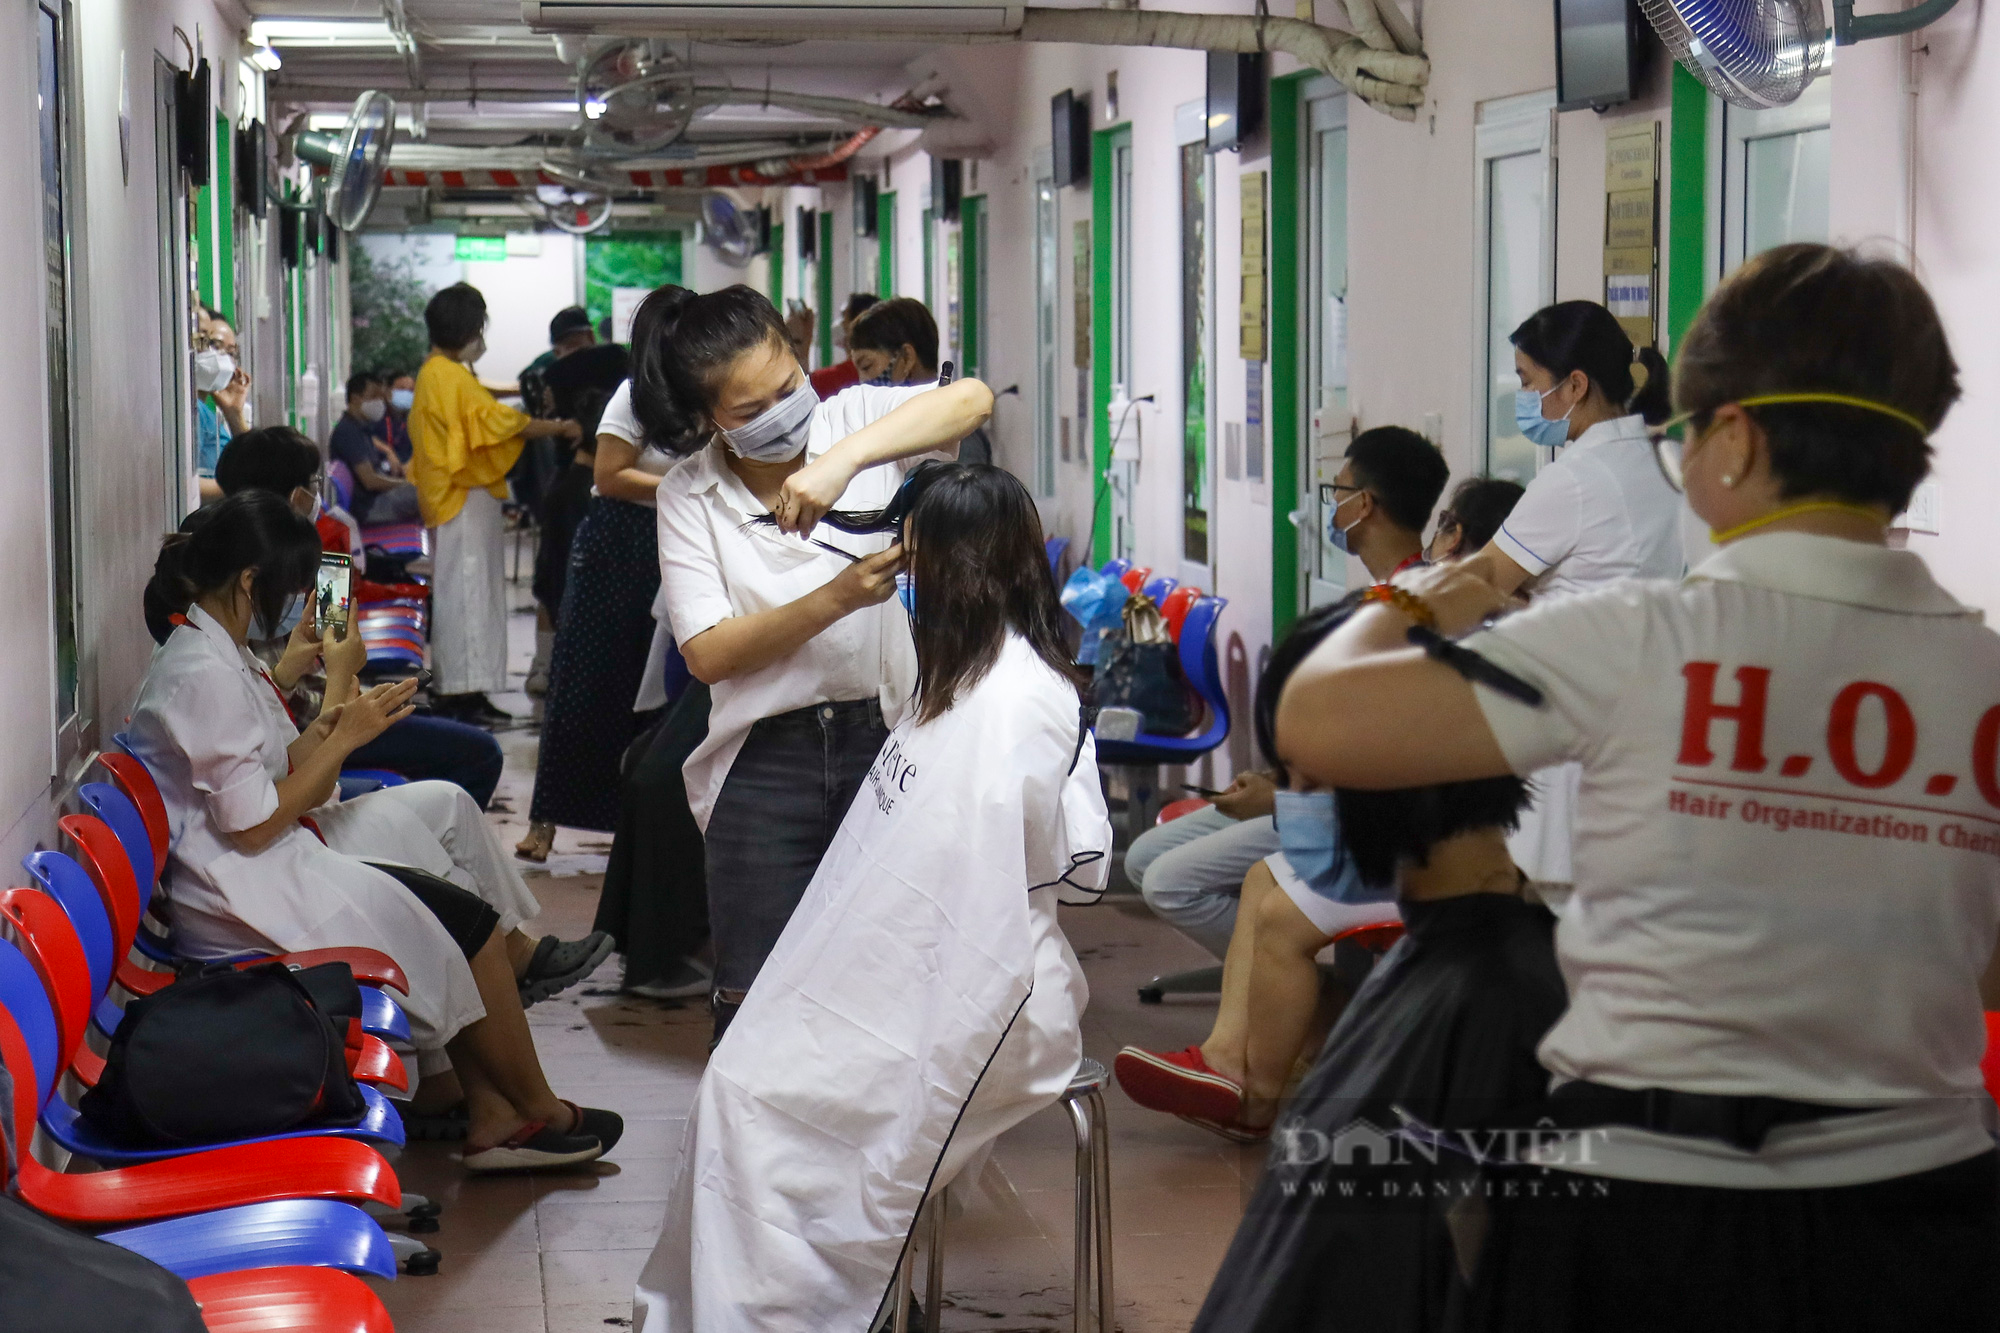 &quot;Salon tóc đặc biệt&quot; cho những y bác sỹ lên đường chống dịch Covid-19 tại Hà Nội - Ảnh 6.